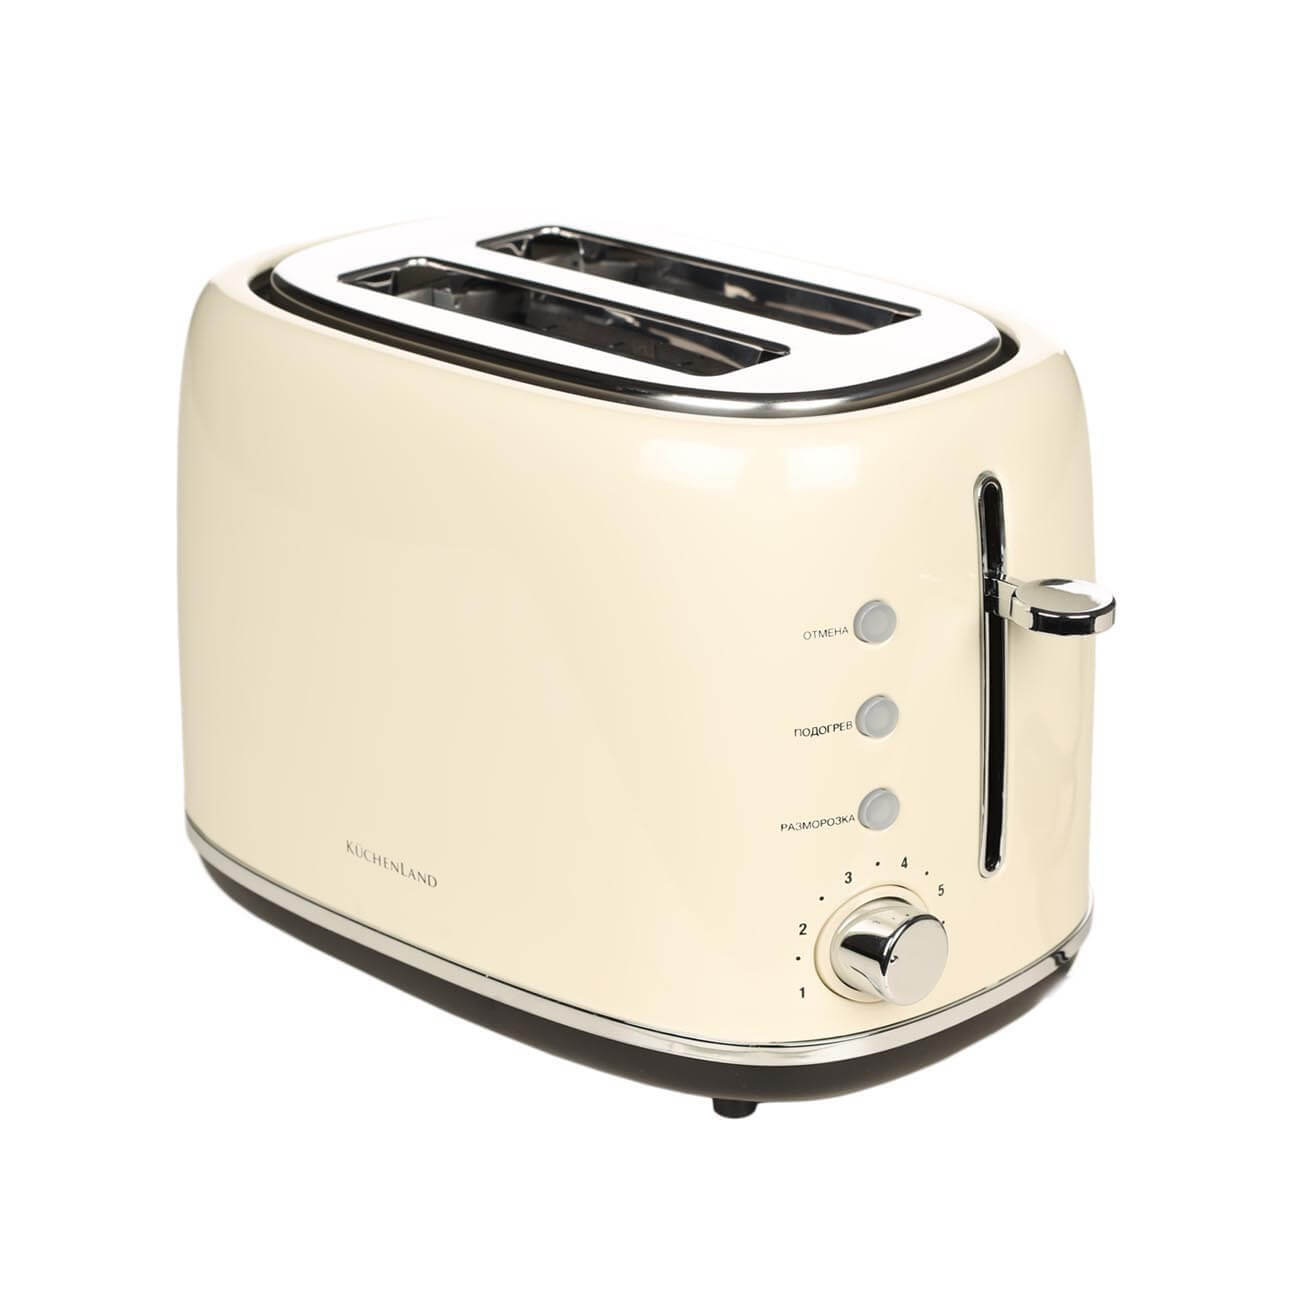 Тостер электр, 730-870 Вт, 6 режим, болат / пластик, бежевый, Vintage kitchen изображение № 1